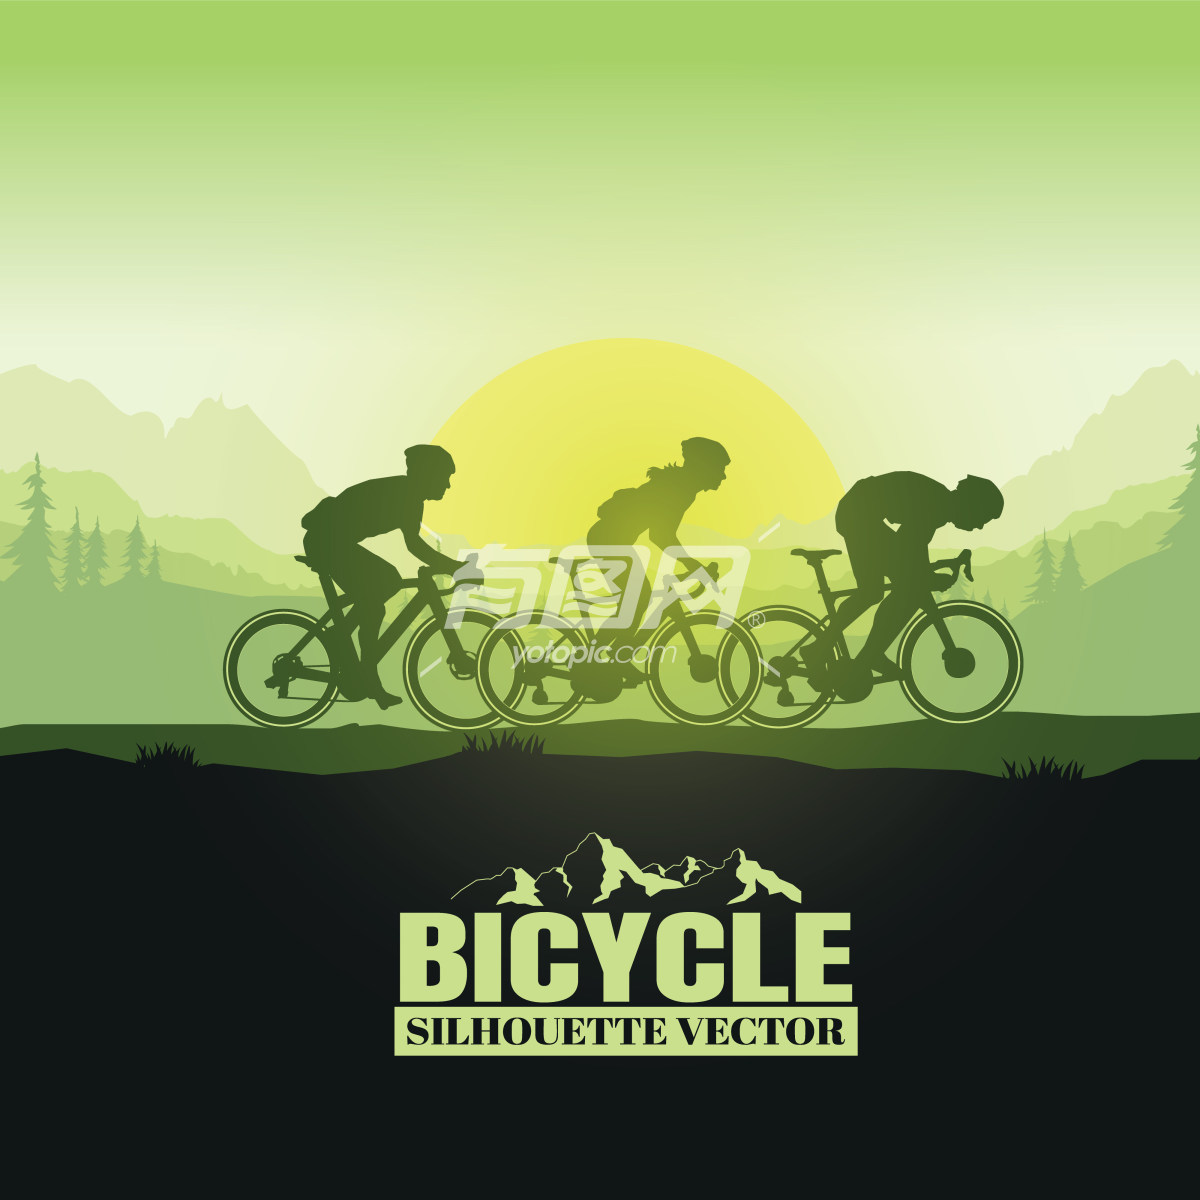 山地自行车比赛宣传海报